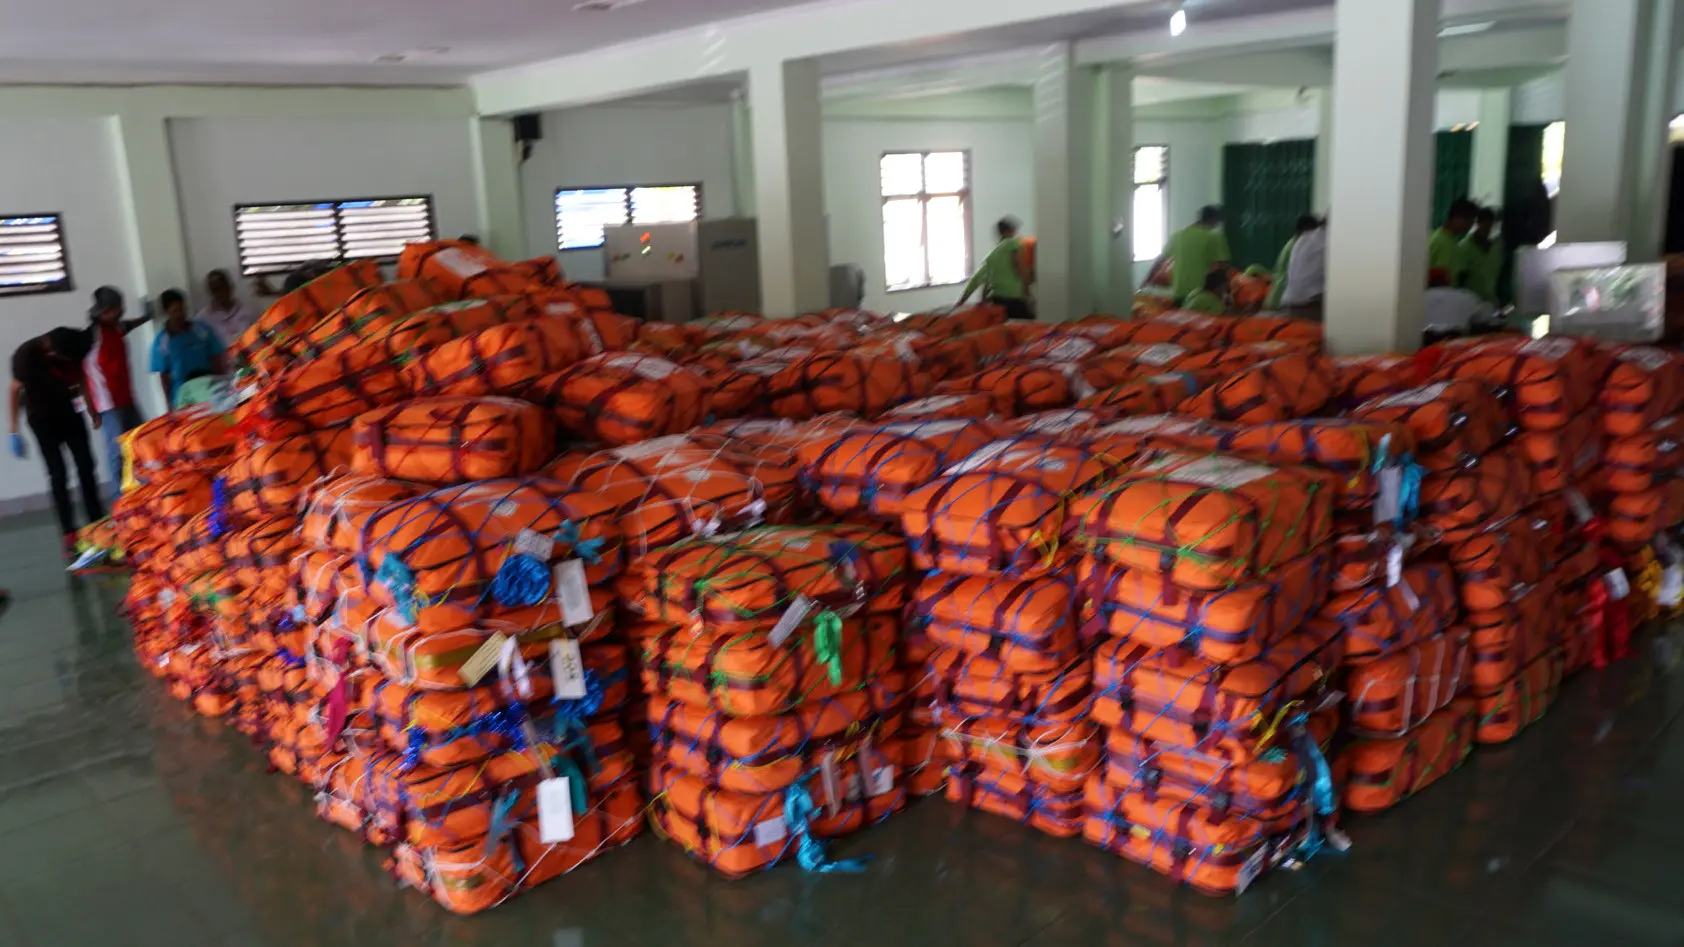 Koper milik calon jemaah haji terihat menumpuk di gudang bagasi Asrama Haji Donohudan Boyolali, Selasa (1/8).(Liputan6.com/Fajar Abrori)